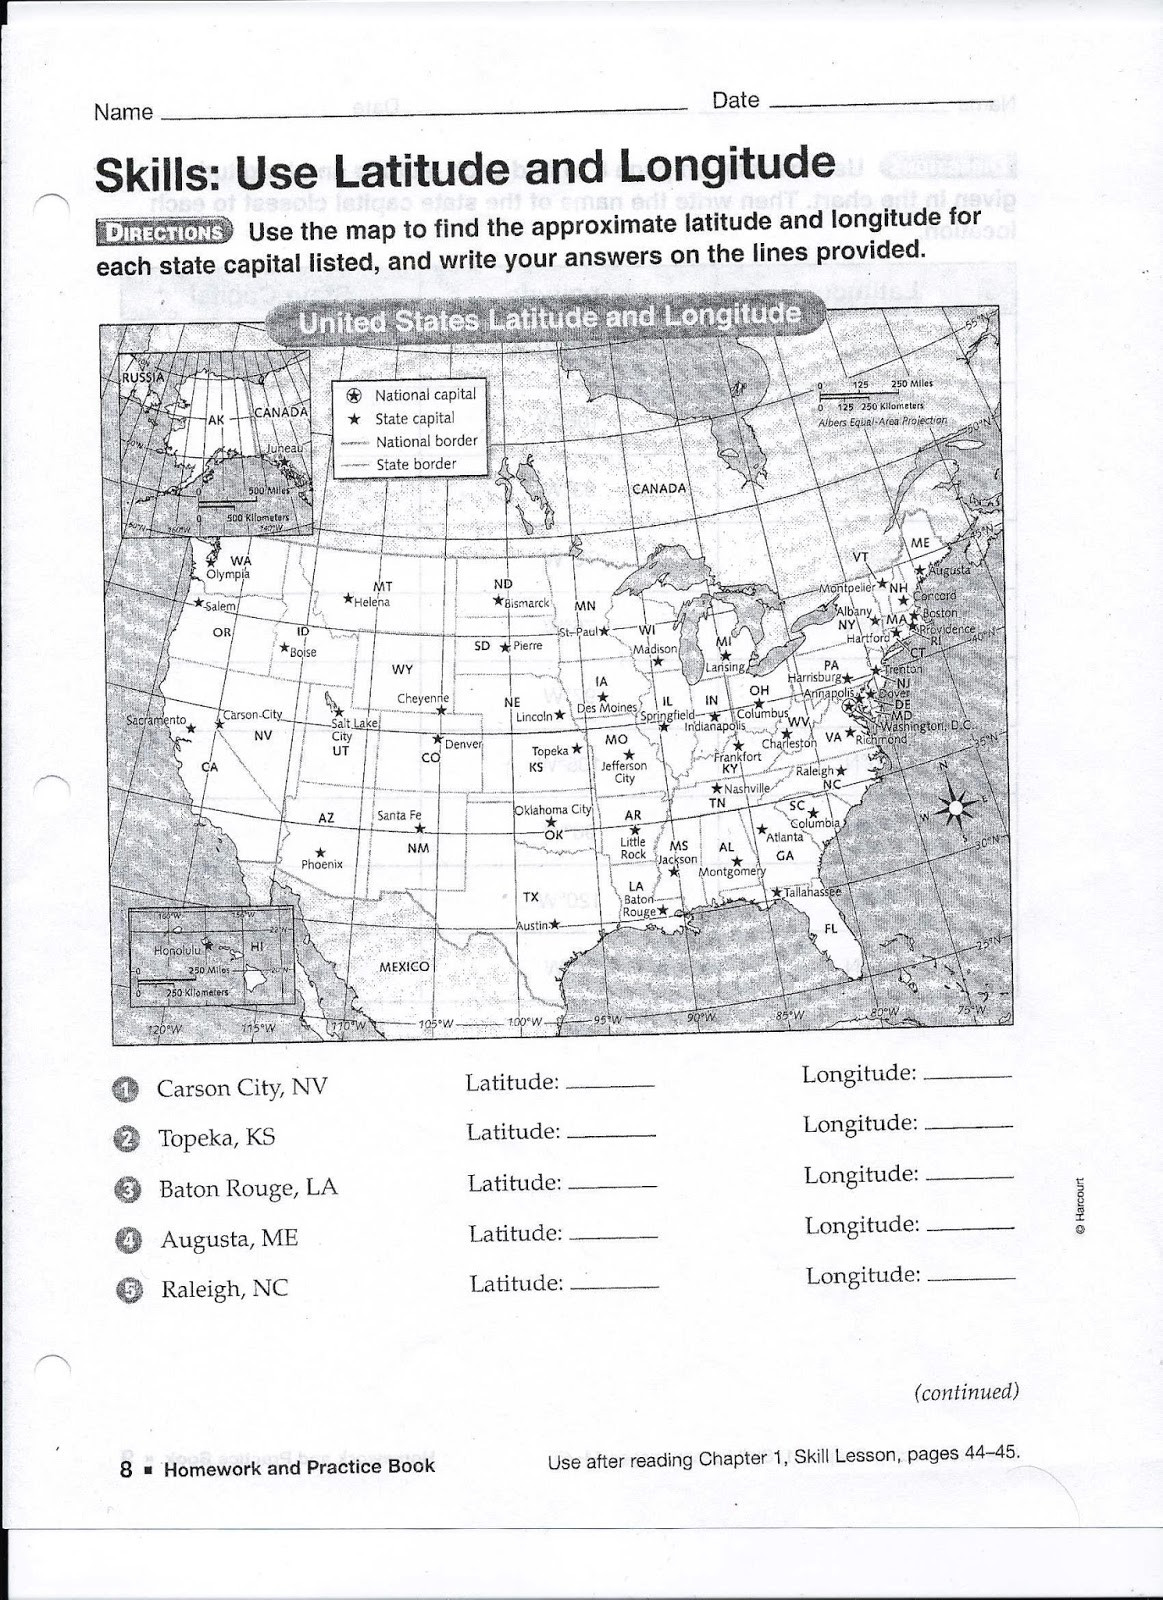 Social Studies Worksheets 6th Grade Gms 6th Grade social Stu S Latitude Longitude